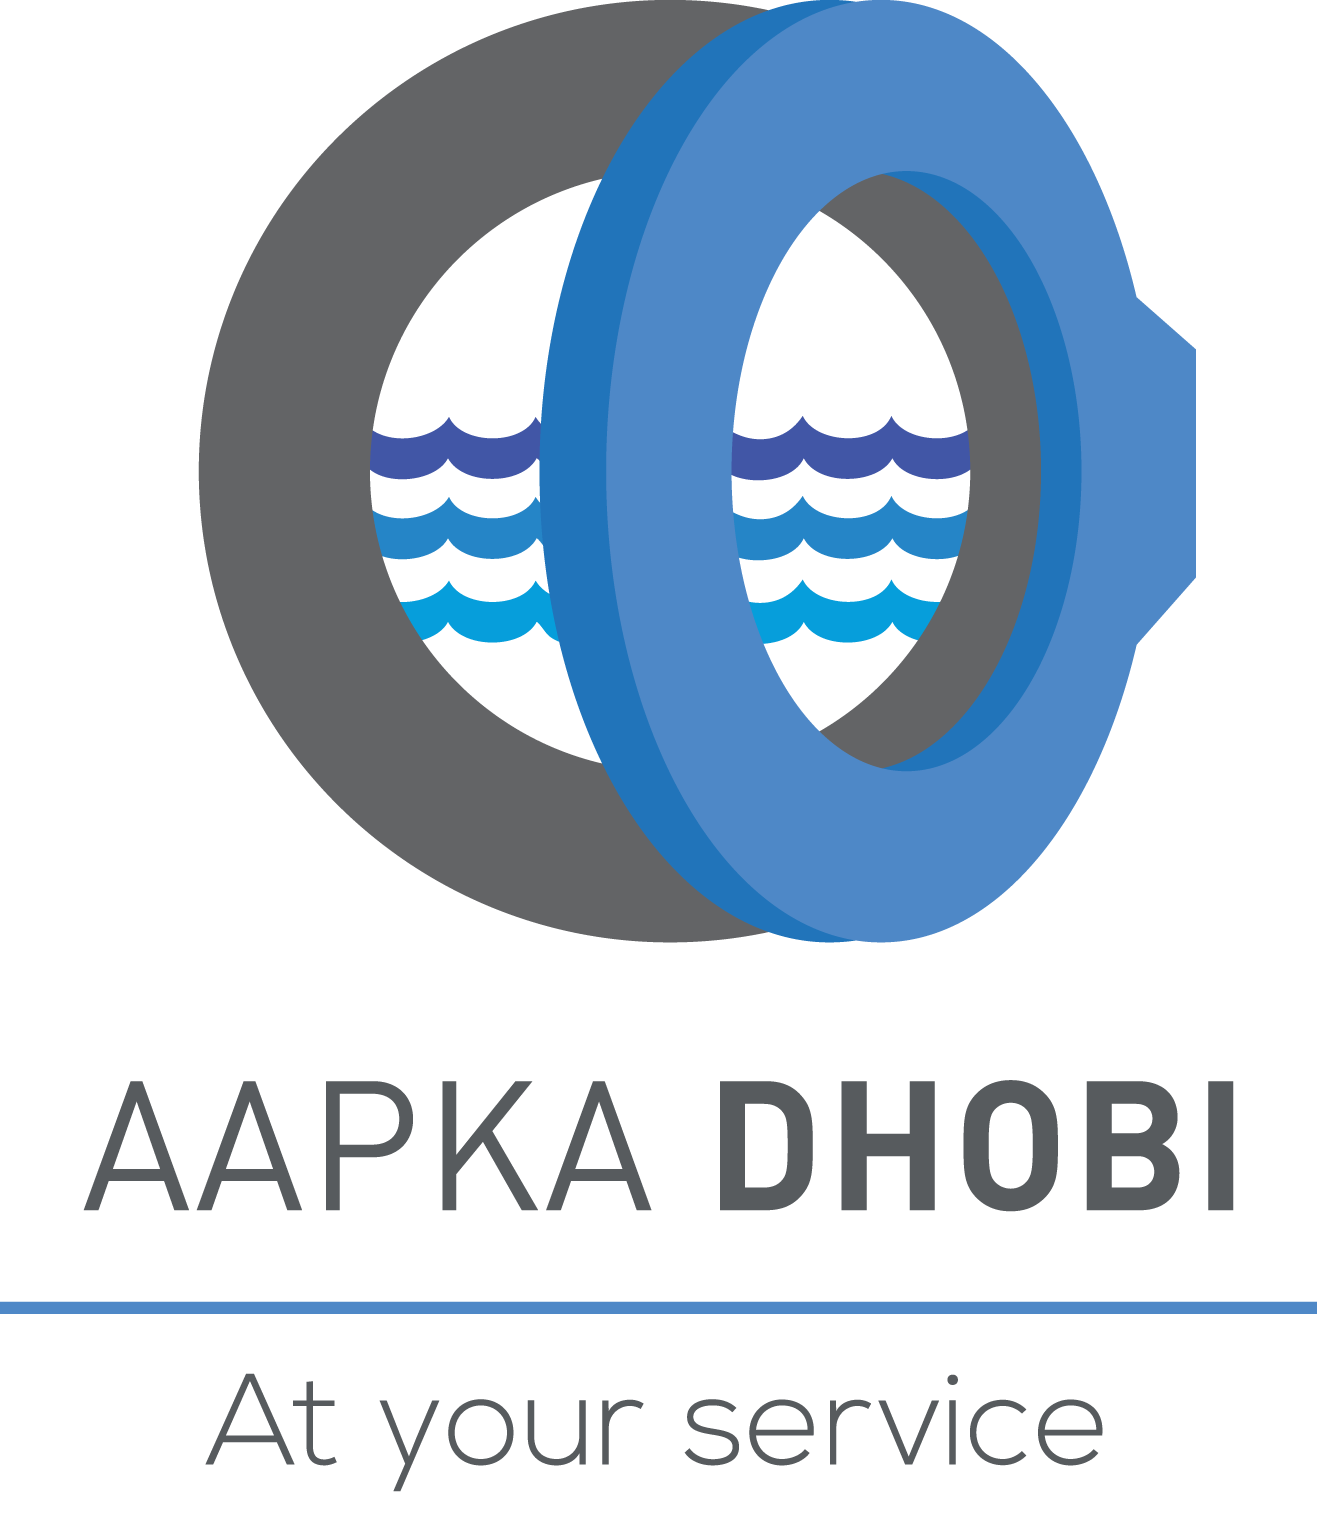 AapkaDhobi AKD eSolutions Pvt. Ltd.